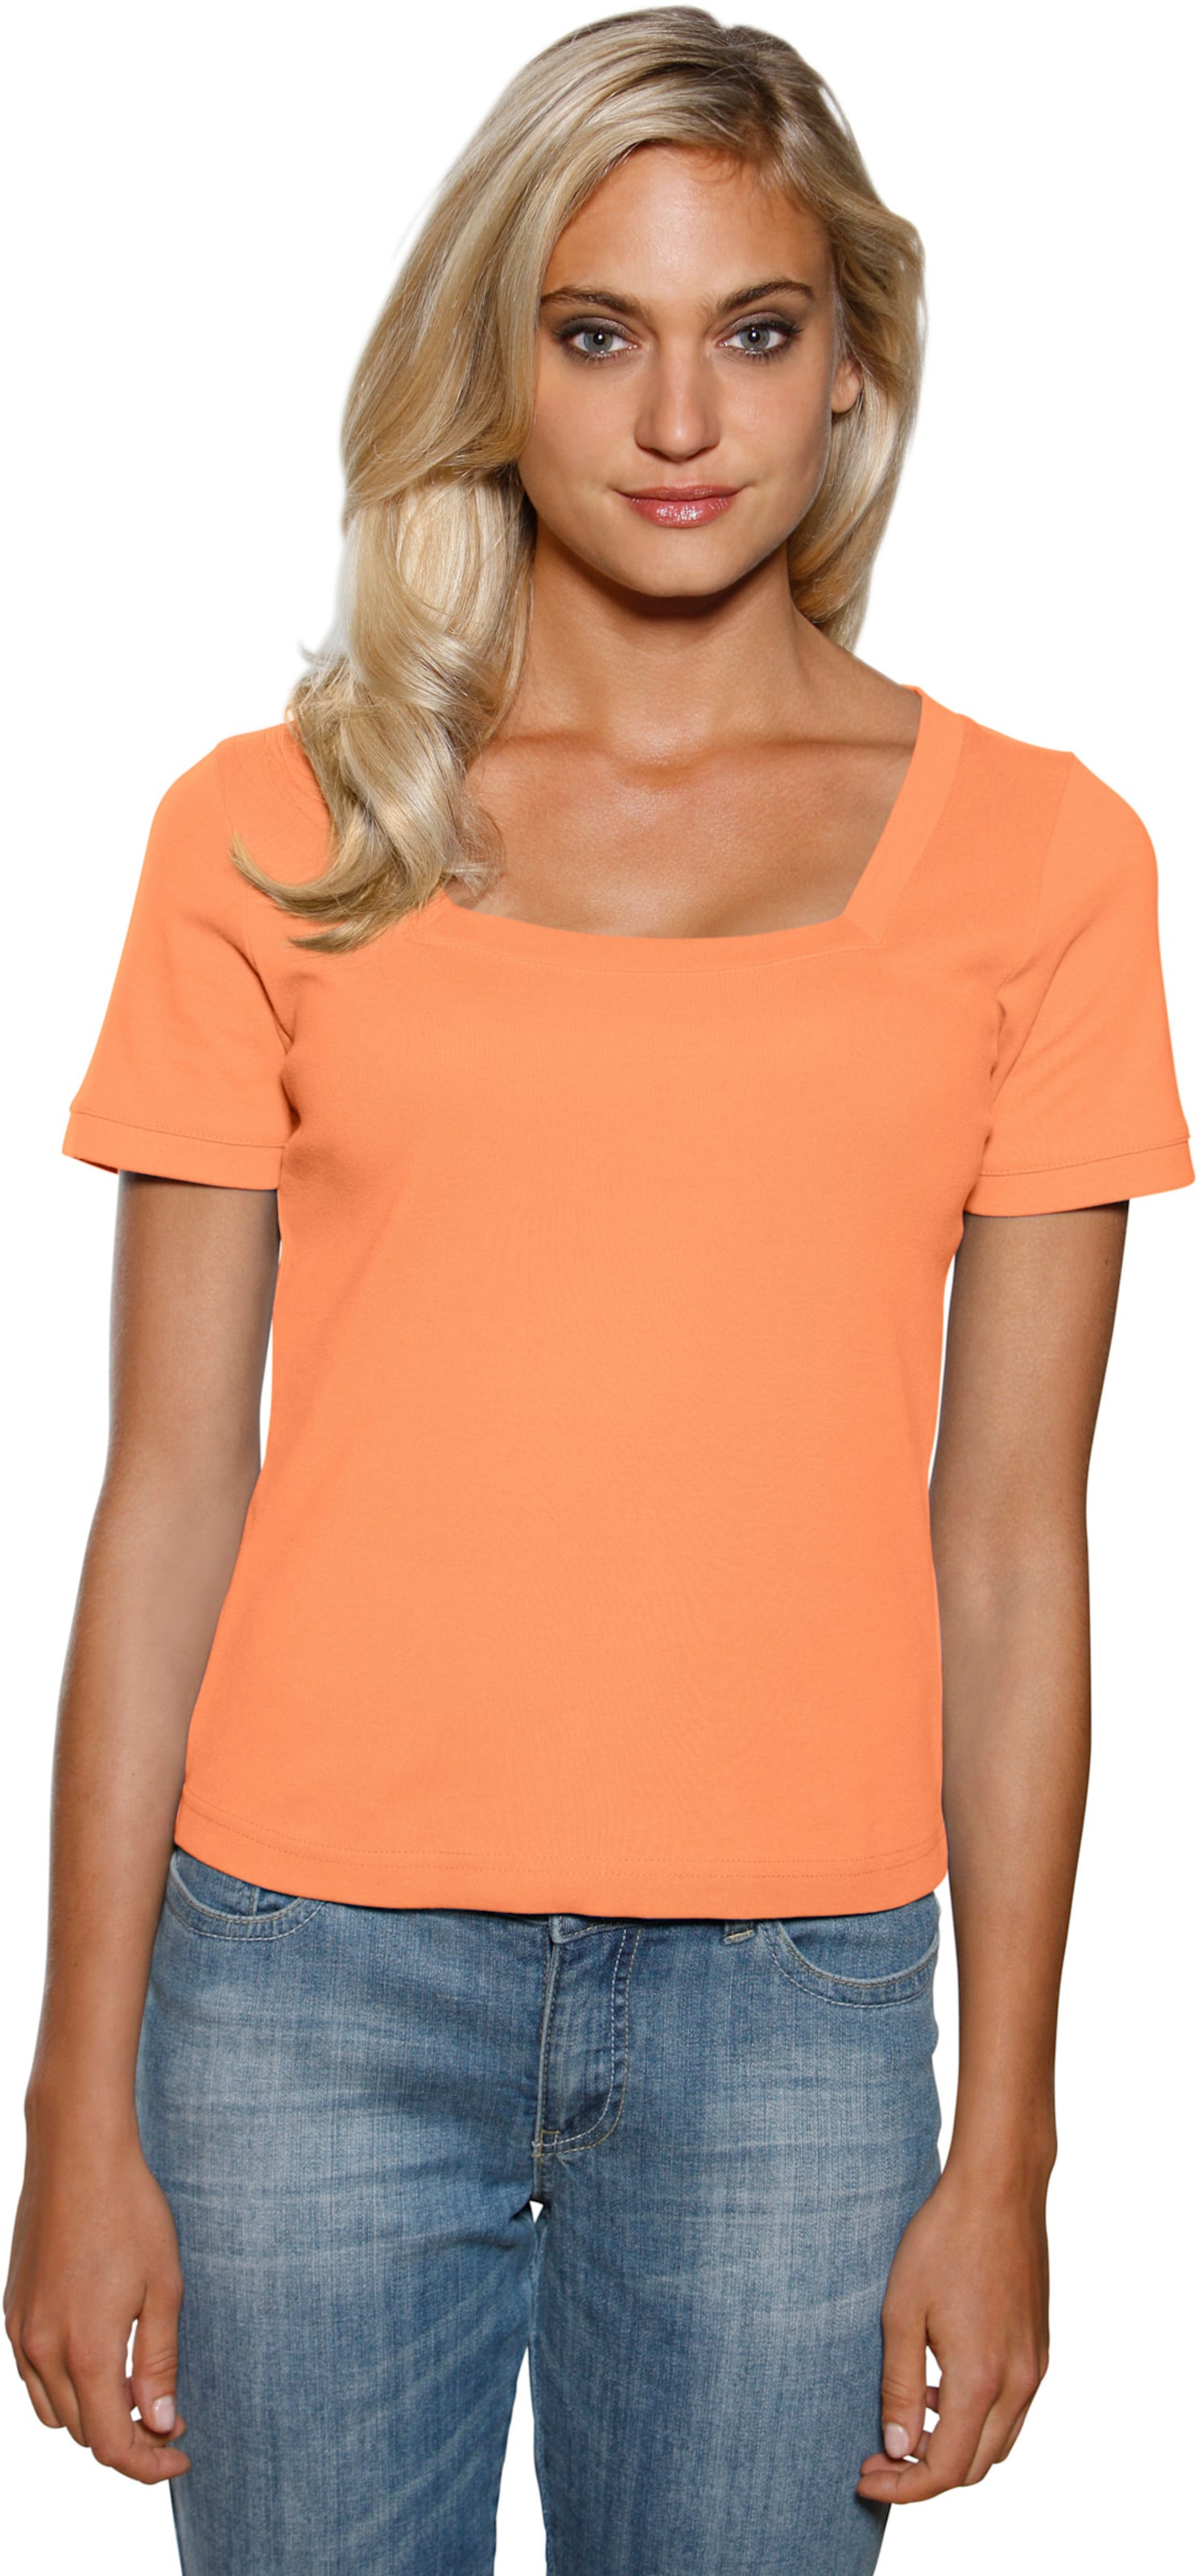 Figur mit günstig Kaufen-Carré-Shirt in orange von heine. Carré-Shirt in orange von heine <![CDATA[Carré-Shirt Mit großzügigem Ausschnitt. Aus trageangenehmer, feiner Rippenware. Figurbetonte Form.]]>. 